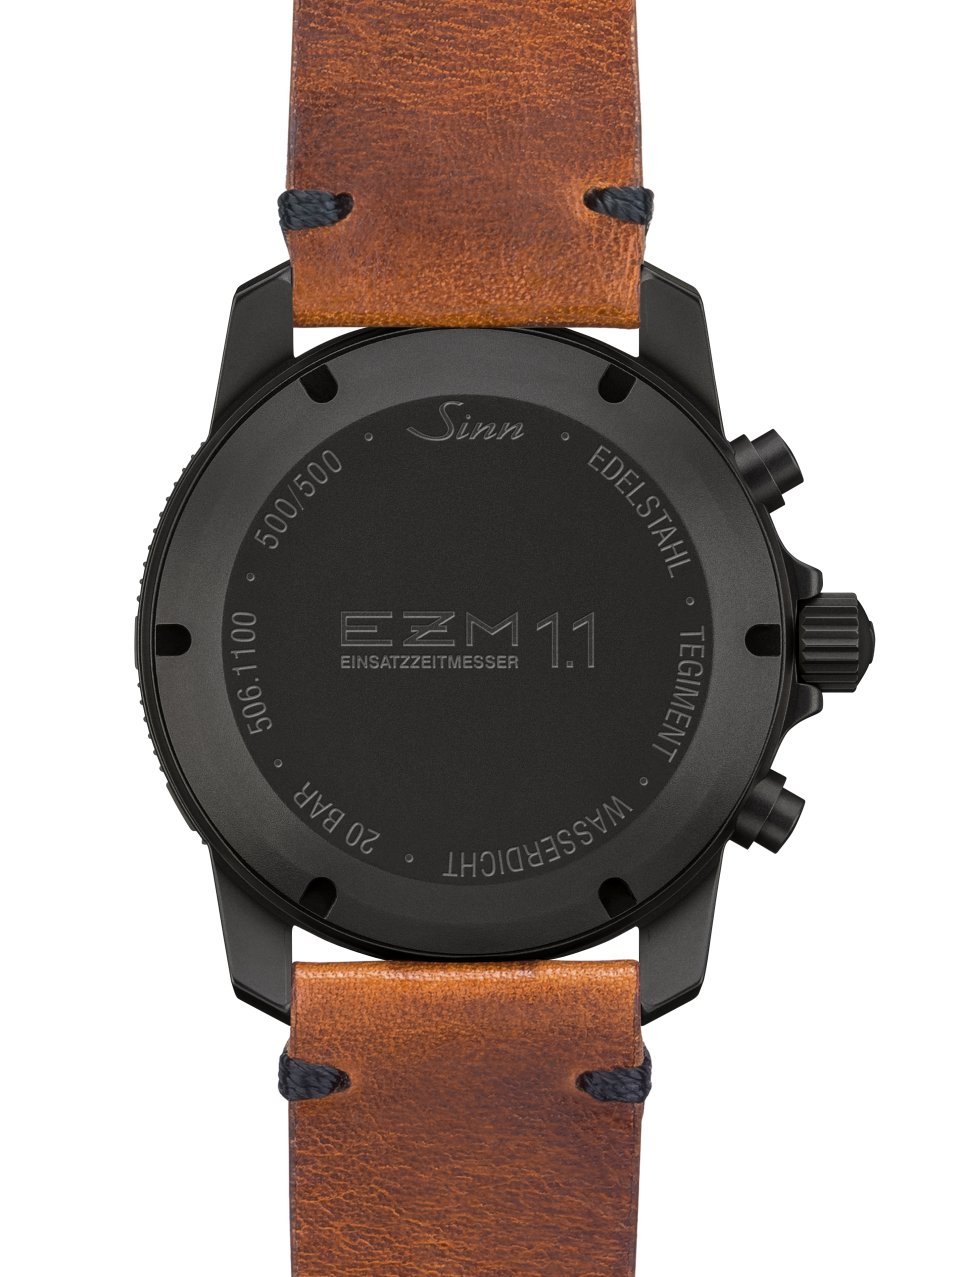 ジン Sinn 506.EZM1.1 ミッションタイマー20周年記念モデル クロノグラフ 500本限定 自動巻き メンズ 箱・保証書付き_739474